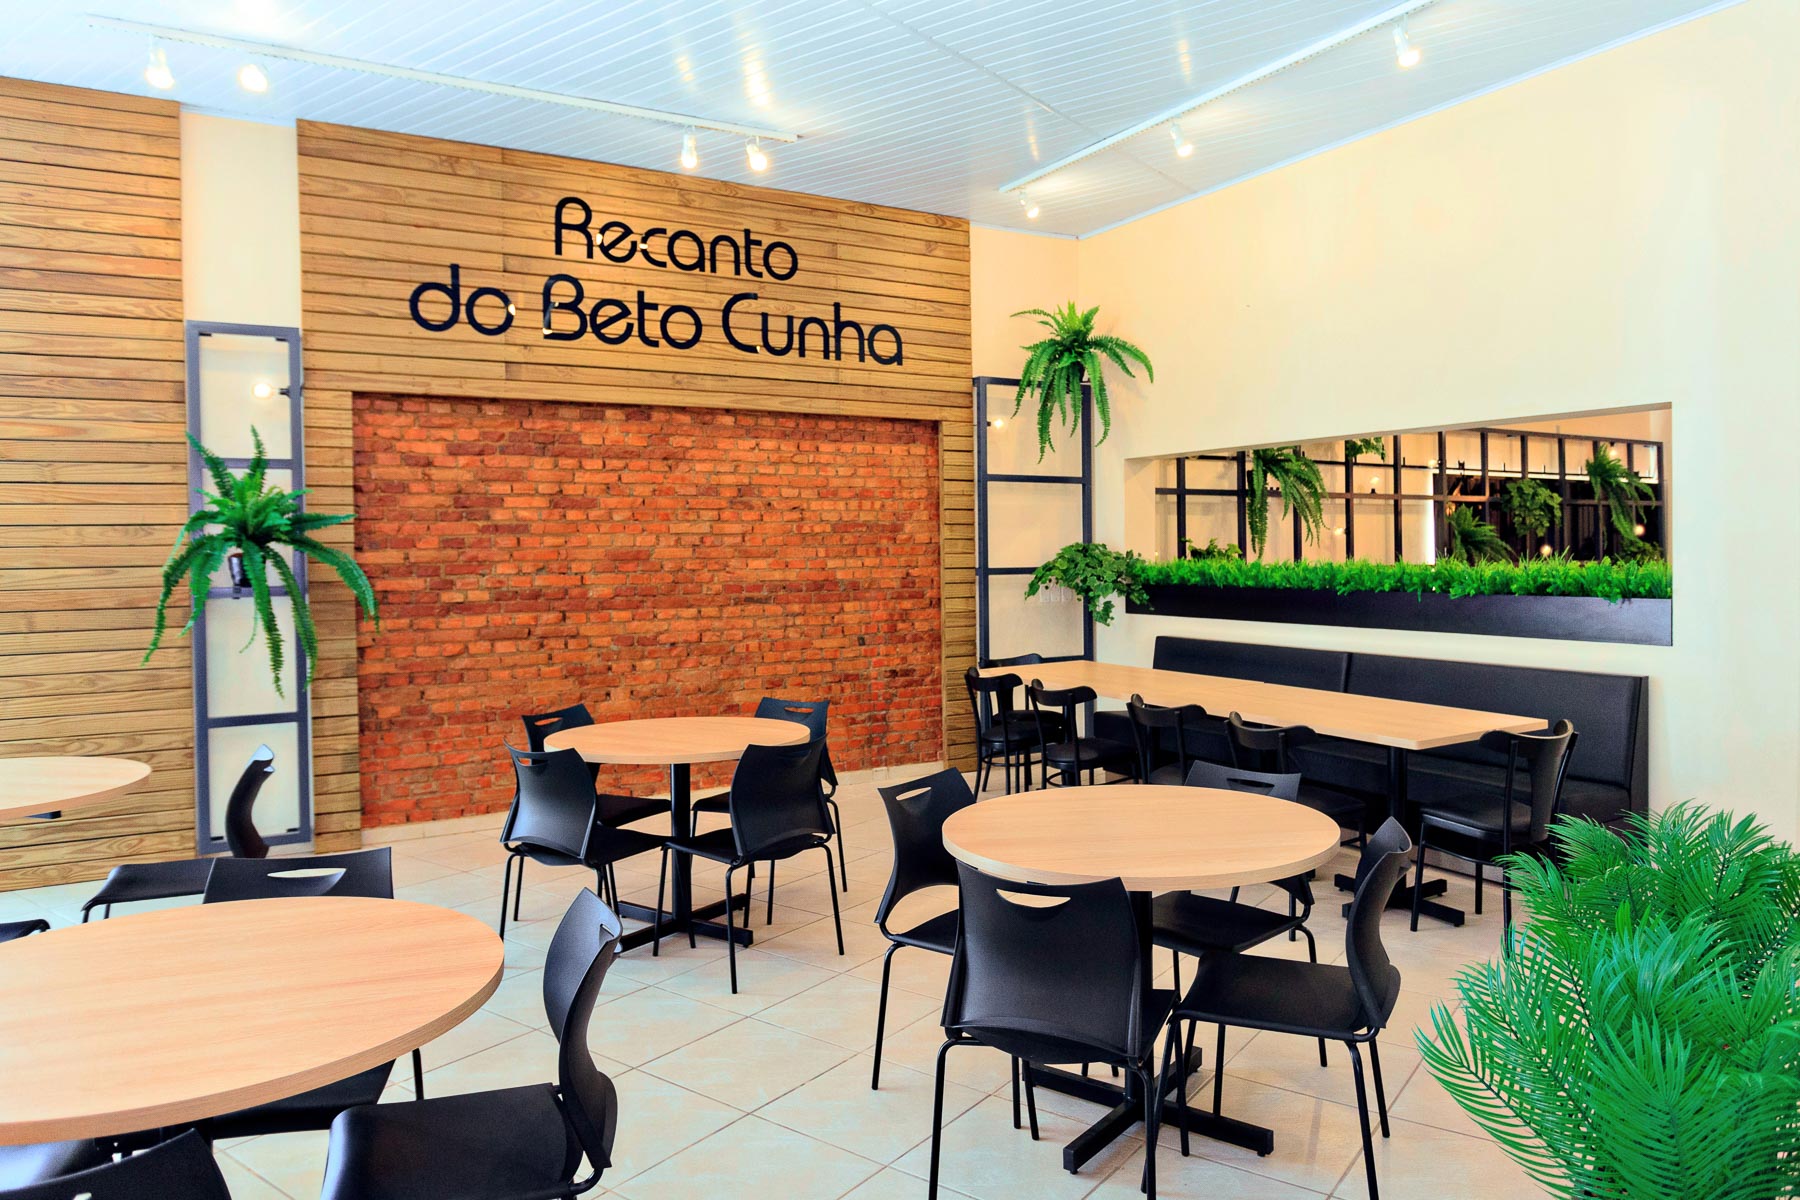 Restaurante Beto Cunha